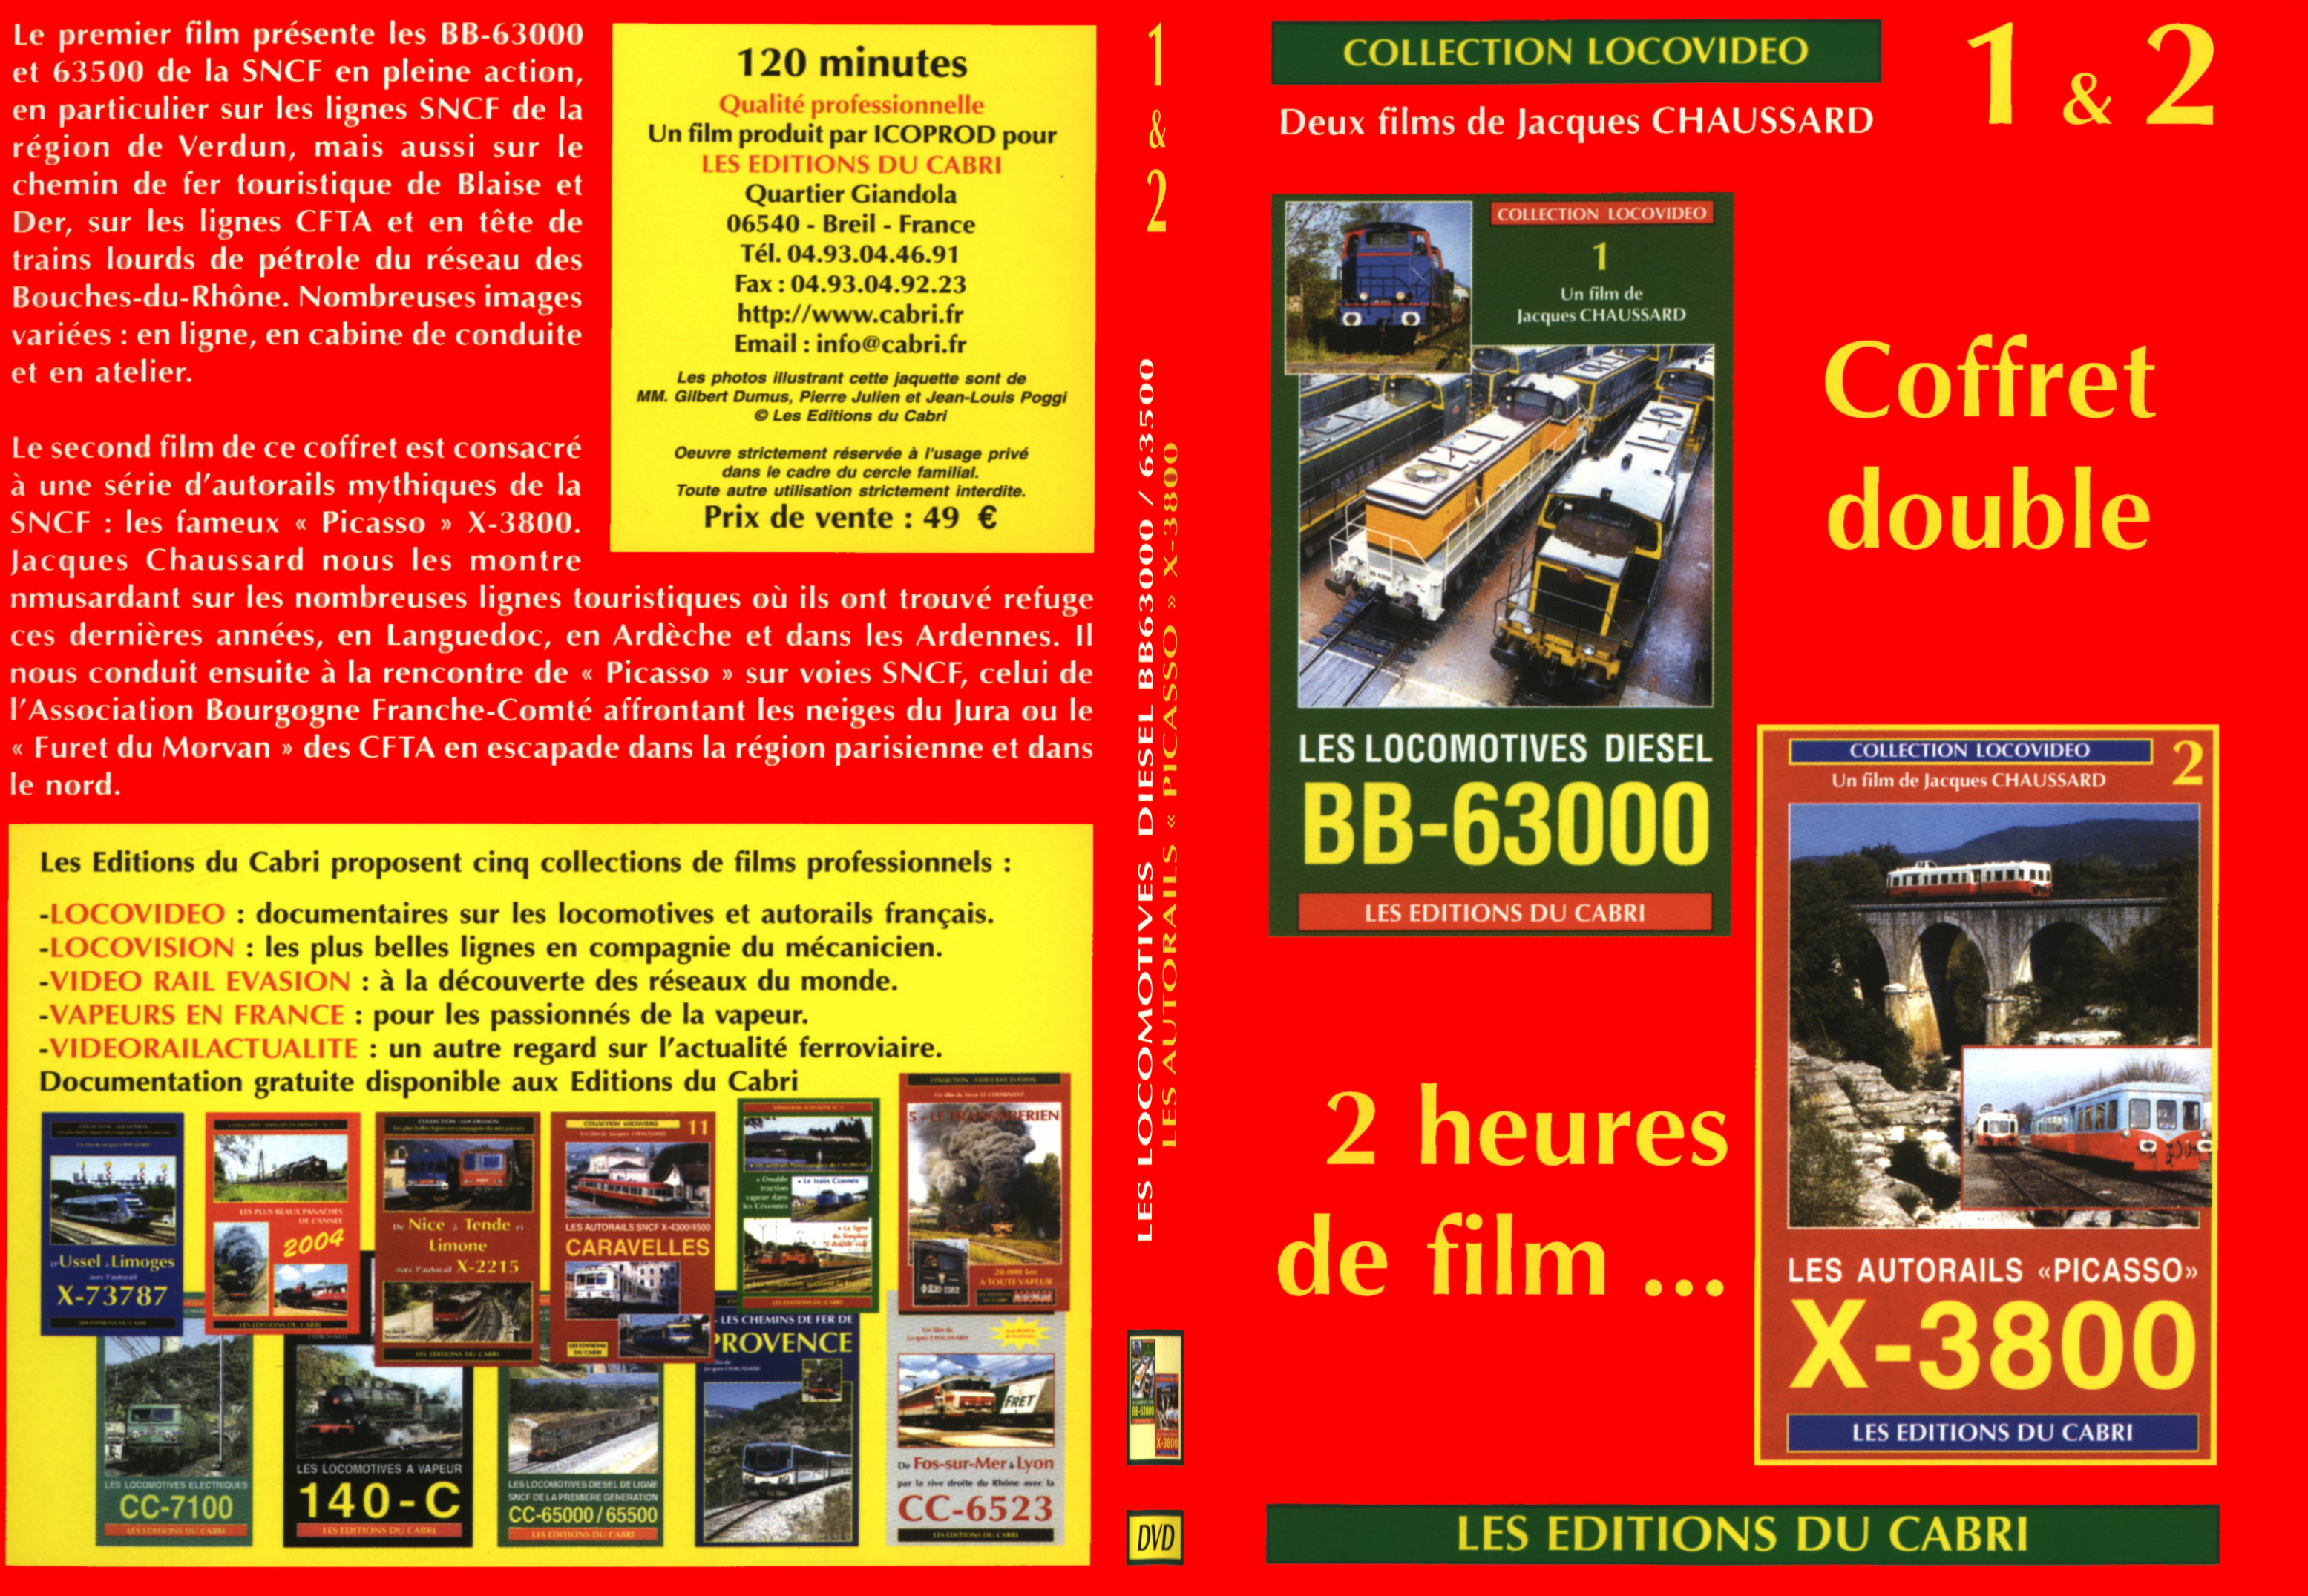 Jaquette DVD Les locomotives diesel BB 63000 et les autorails X-3800 - SLIM